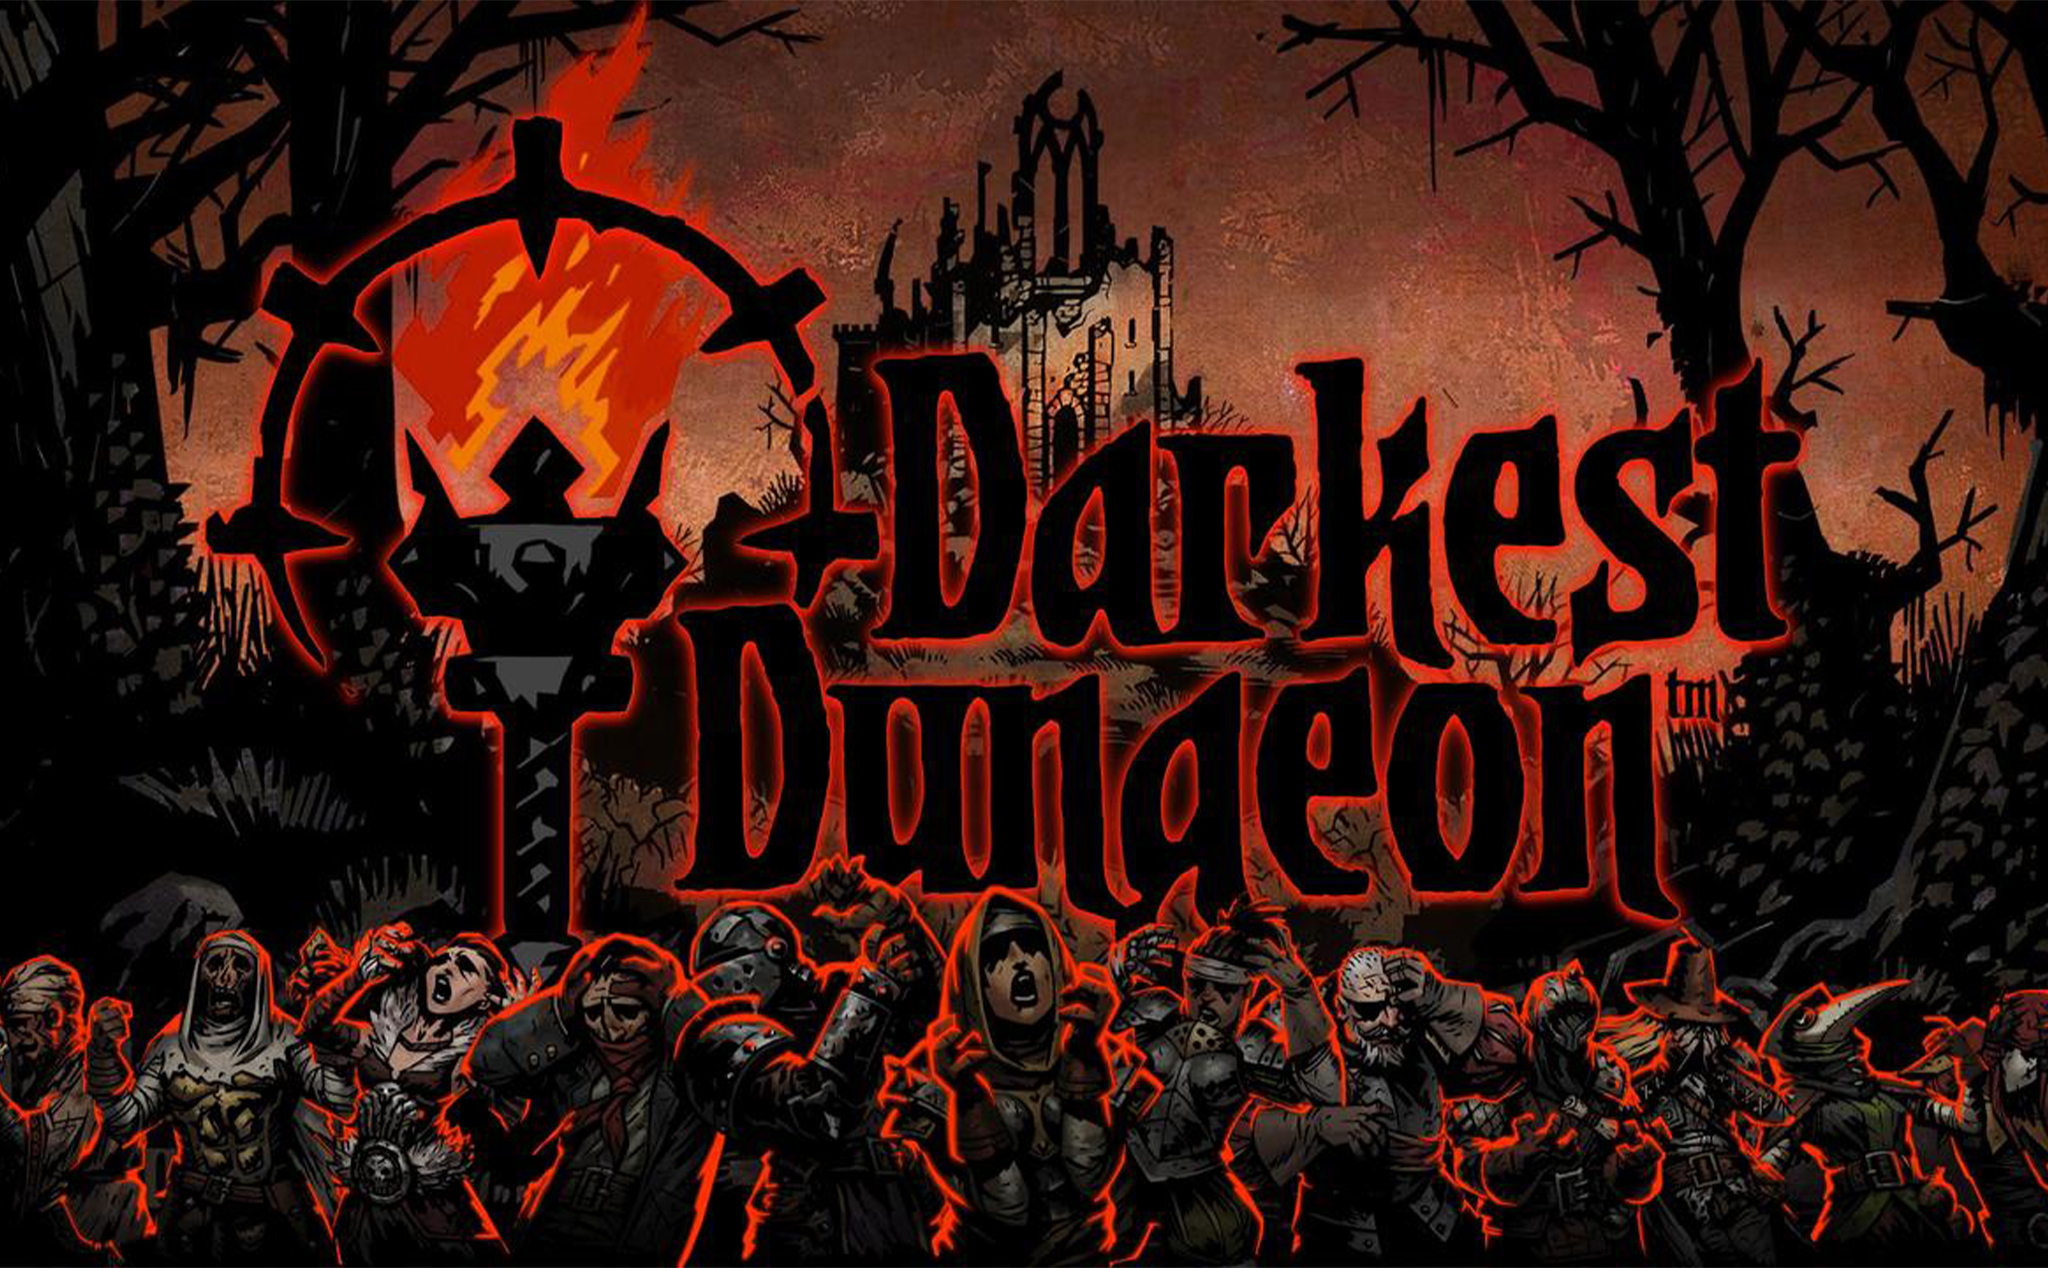 Darkest Dungeon обложка